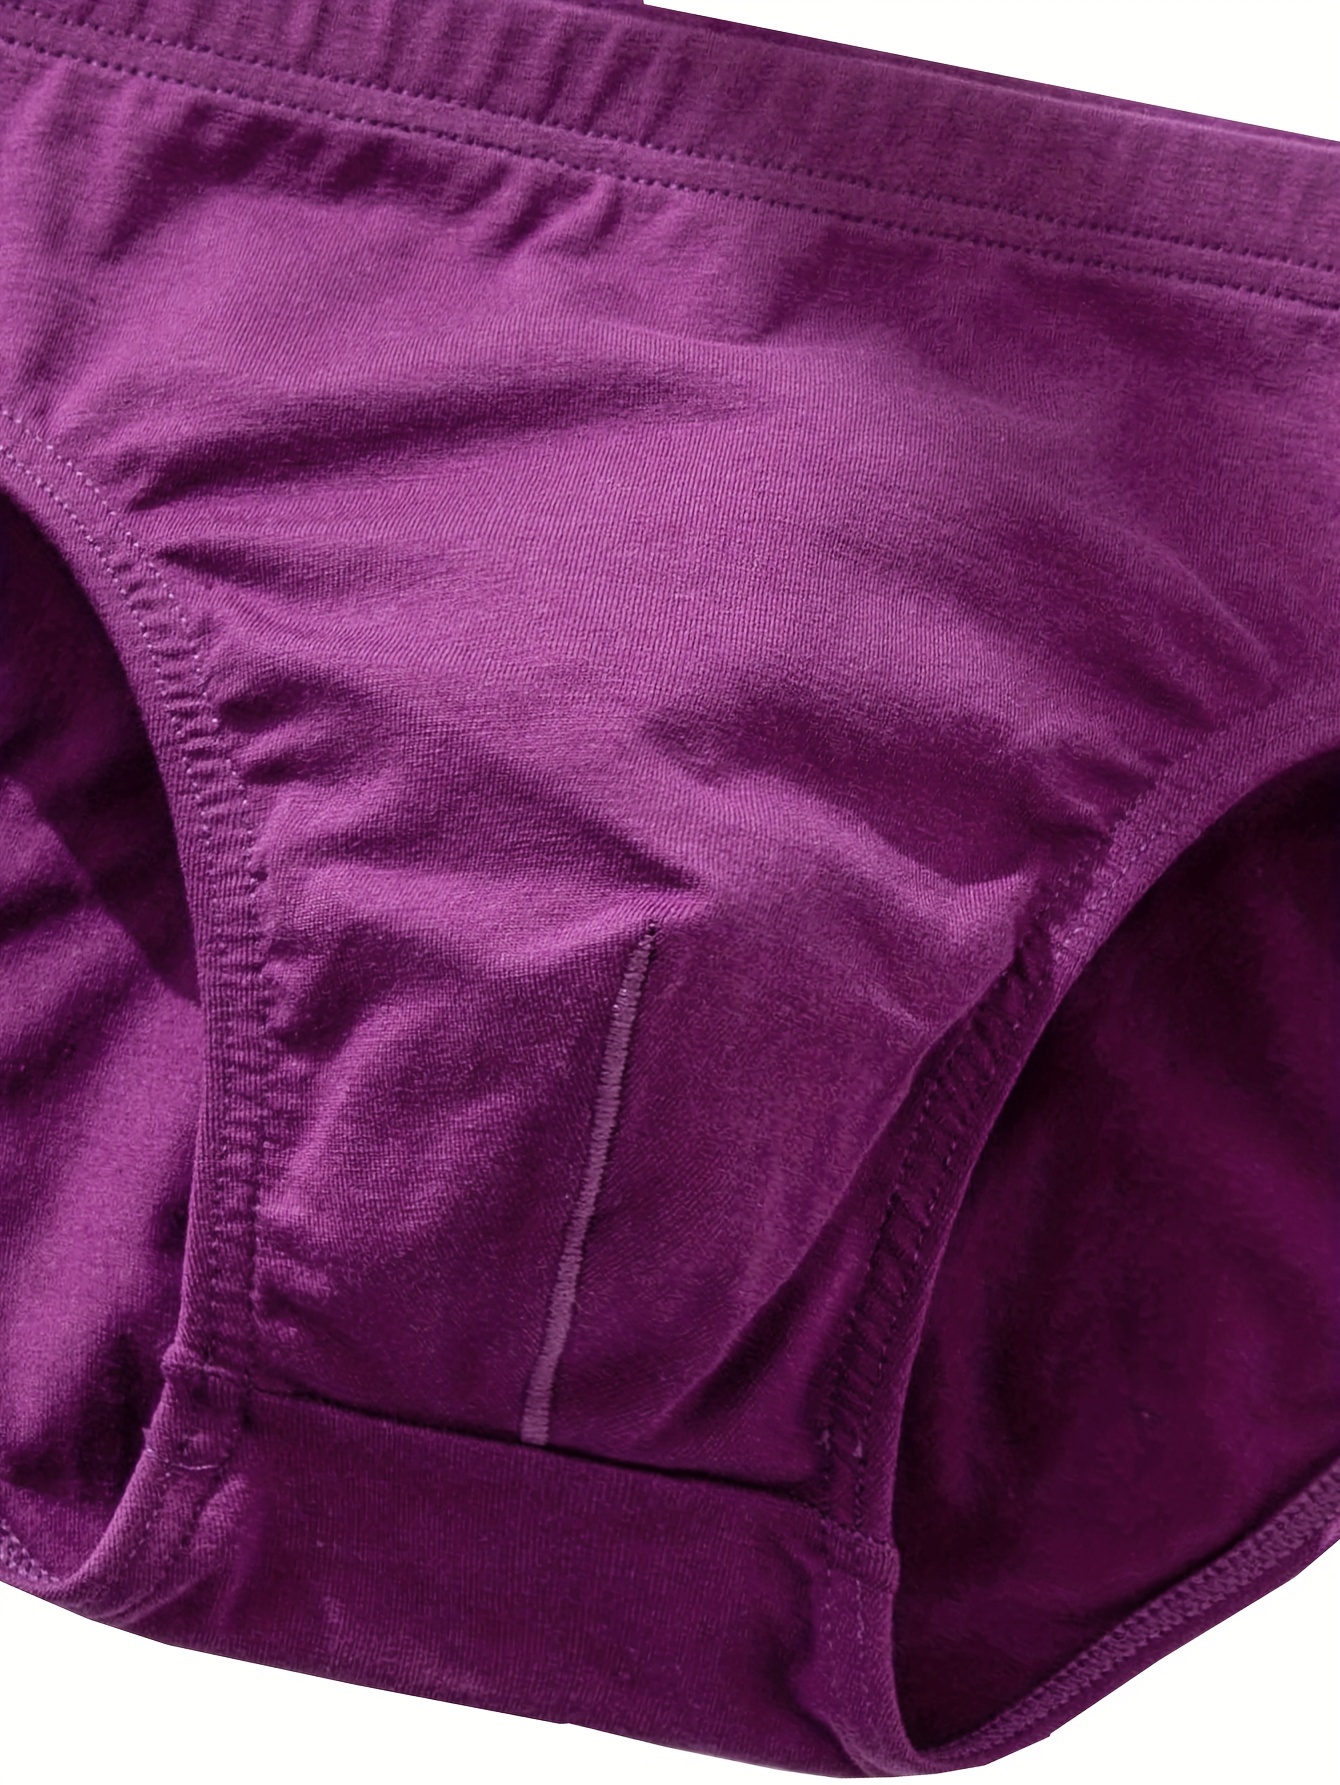 Men's Briefs Underwear Fashion Low Waist Breathable Comfy - Temu